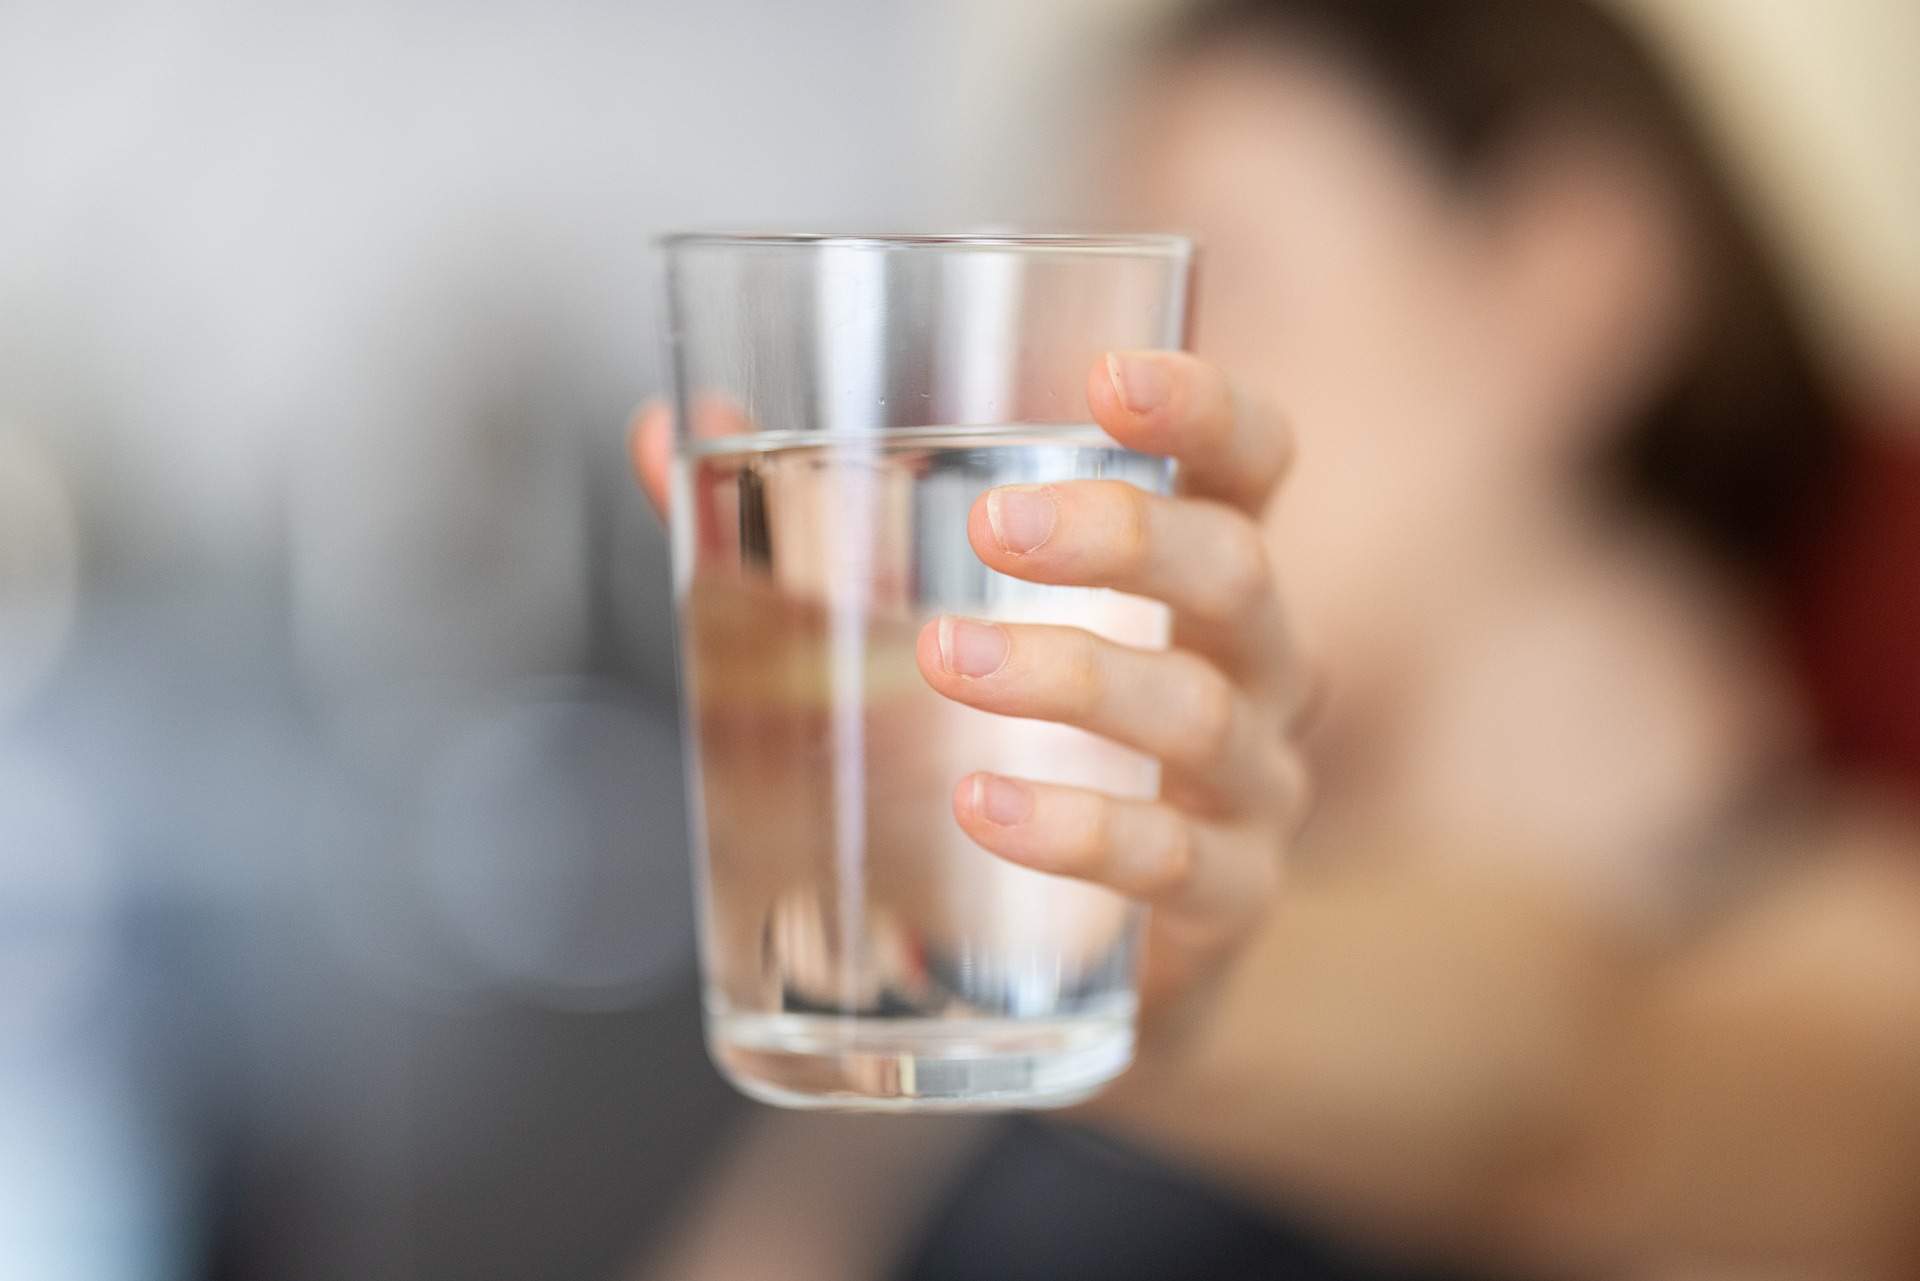 És millor beure l'aigua freda o del temps? Un famós nutricionista explica per què